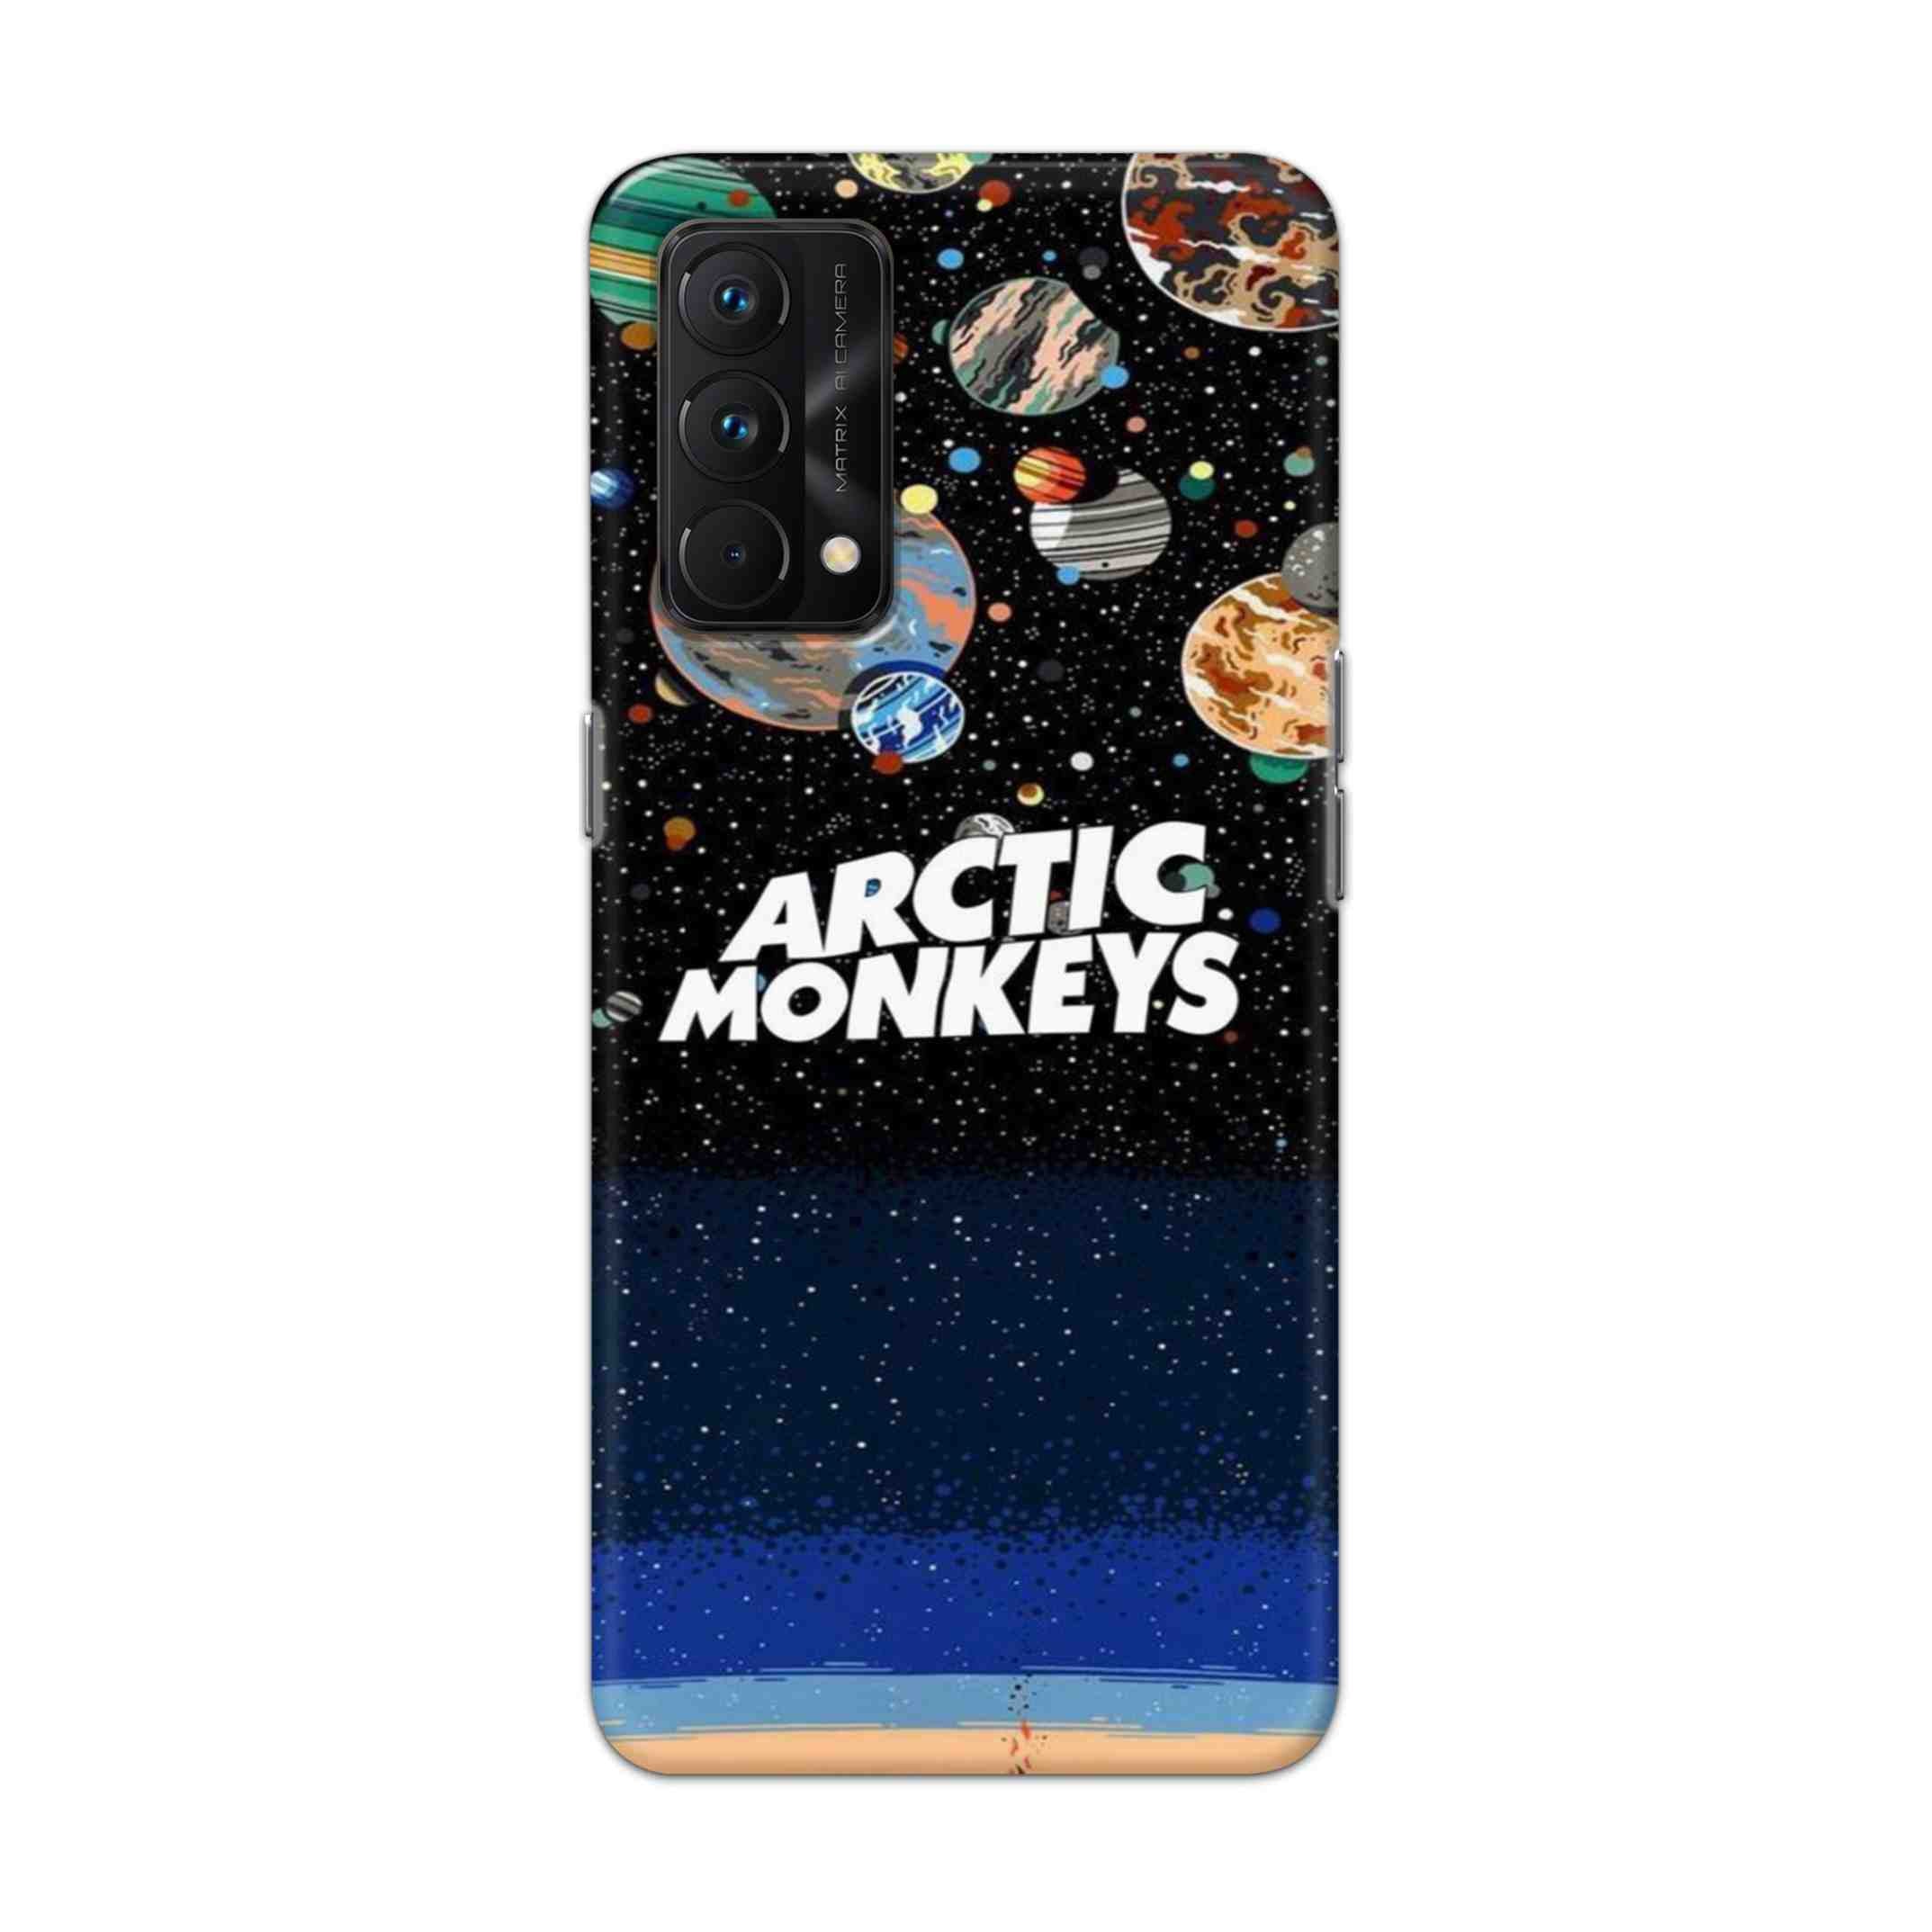 Buy Artic Monkeys Hard Back Mobile Phone Case Cover For Realme GT Master Online